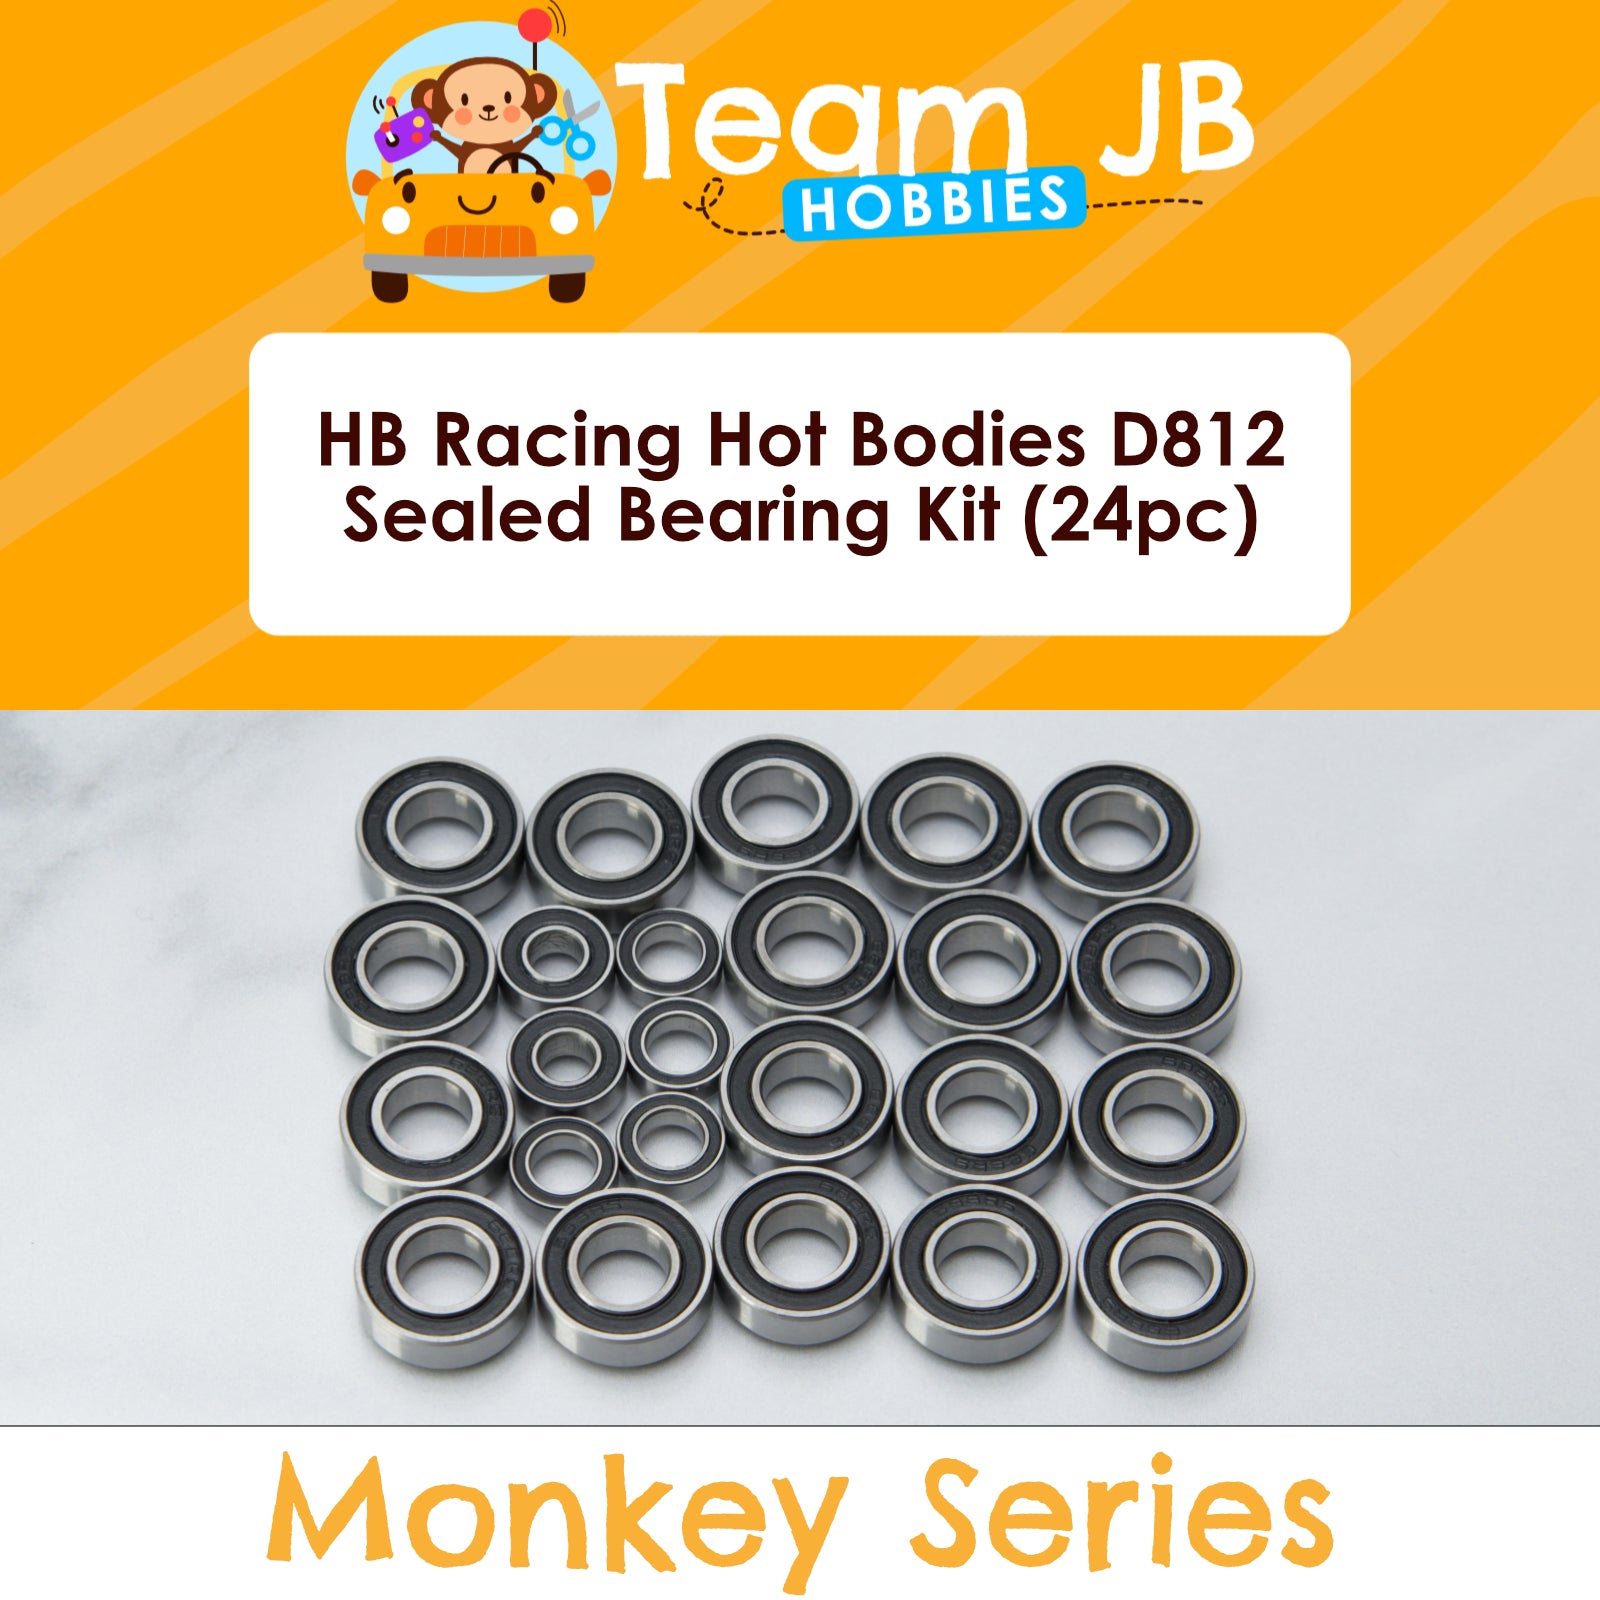 HB Racing Hot Bodies D812 - Sealed Bearing Kit